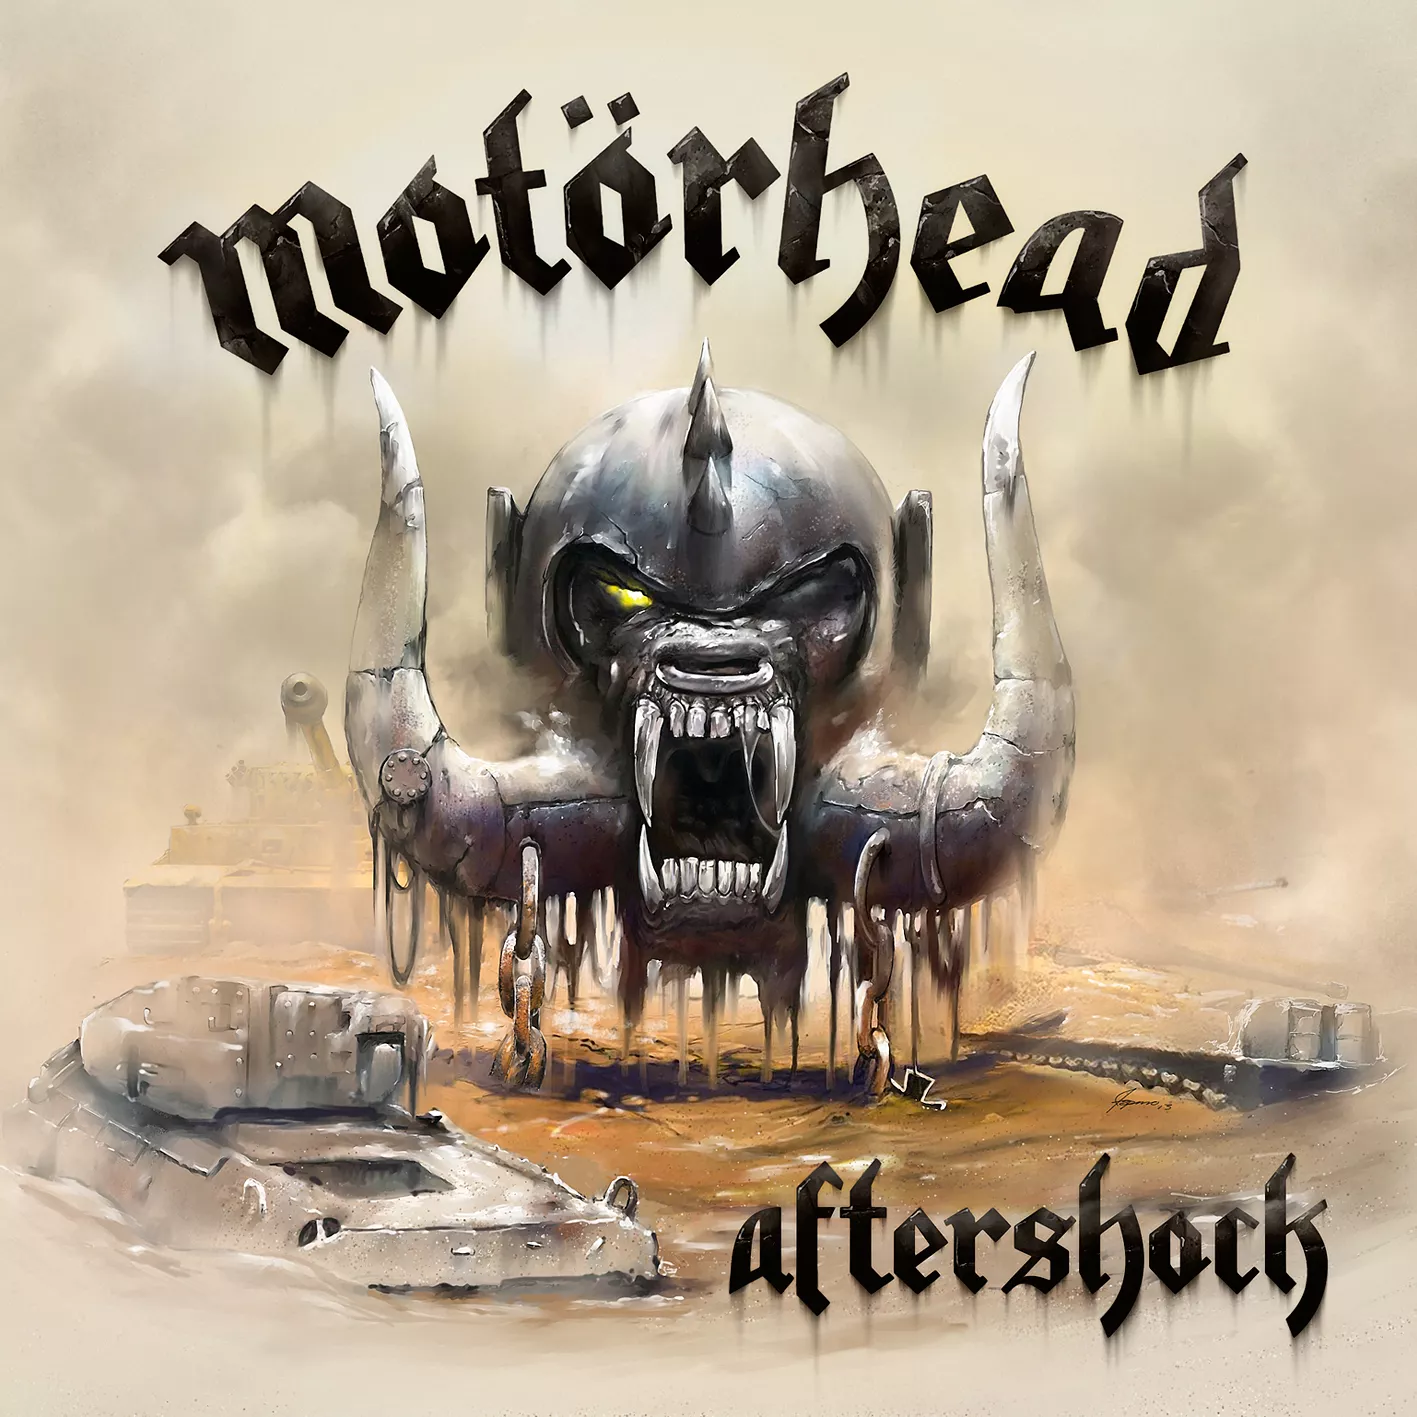 Aftershock - Motörhead